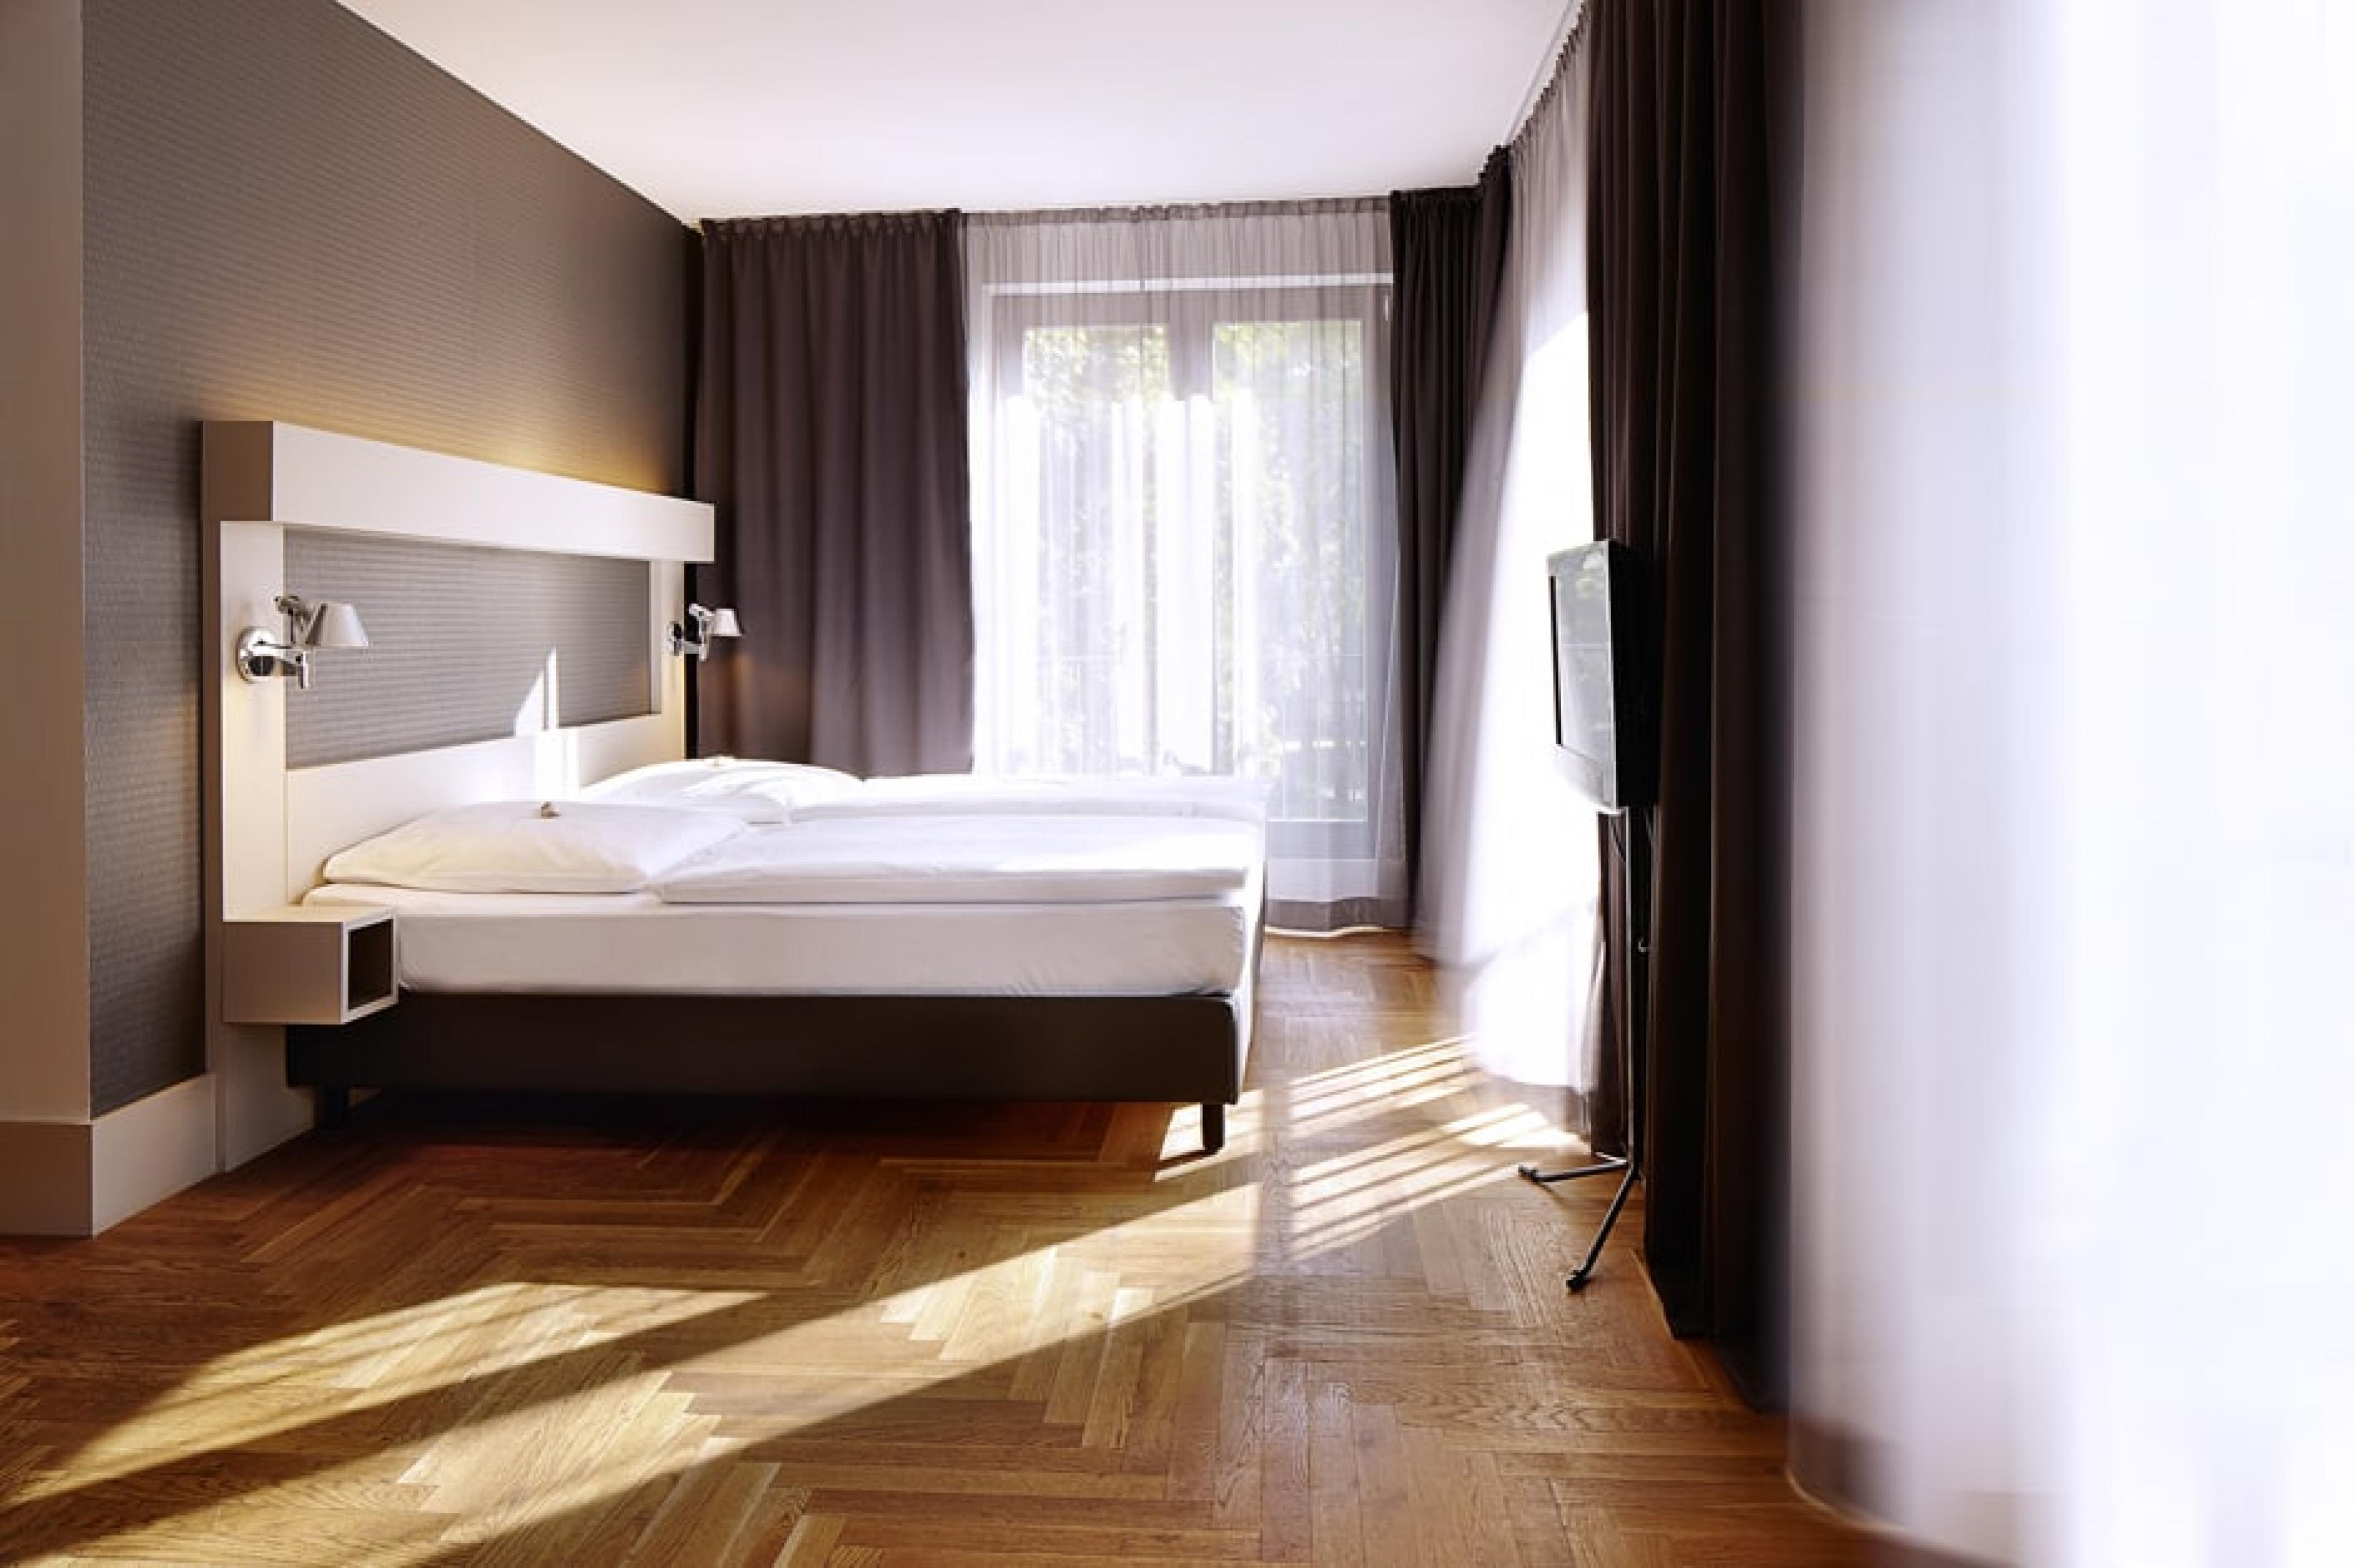 Room Interior - Amano Hotel, Berlin, Germany